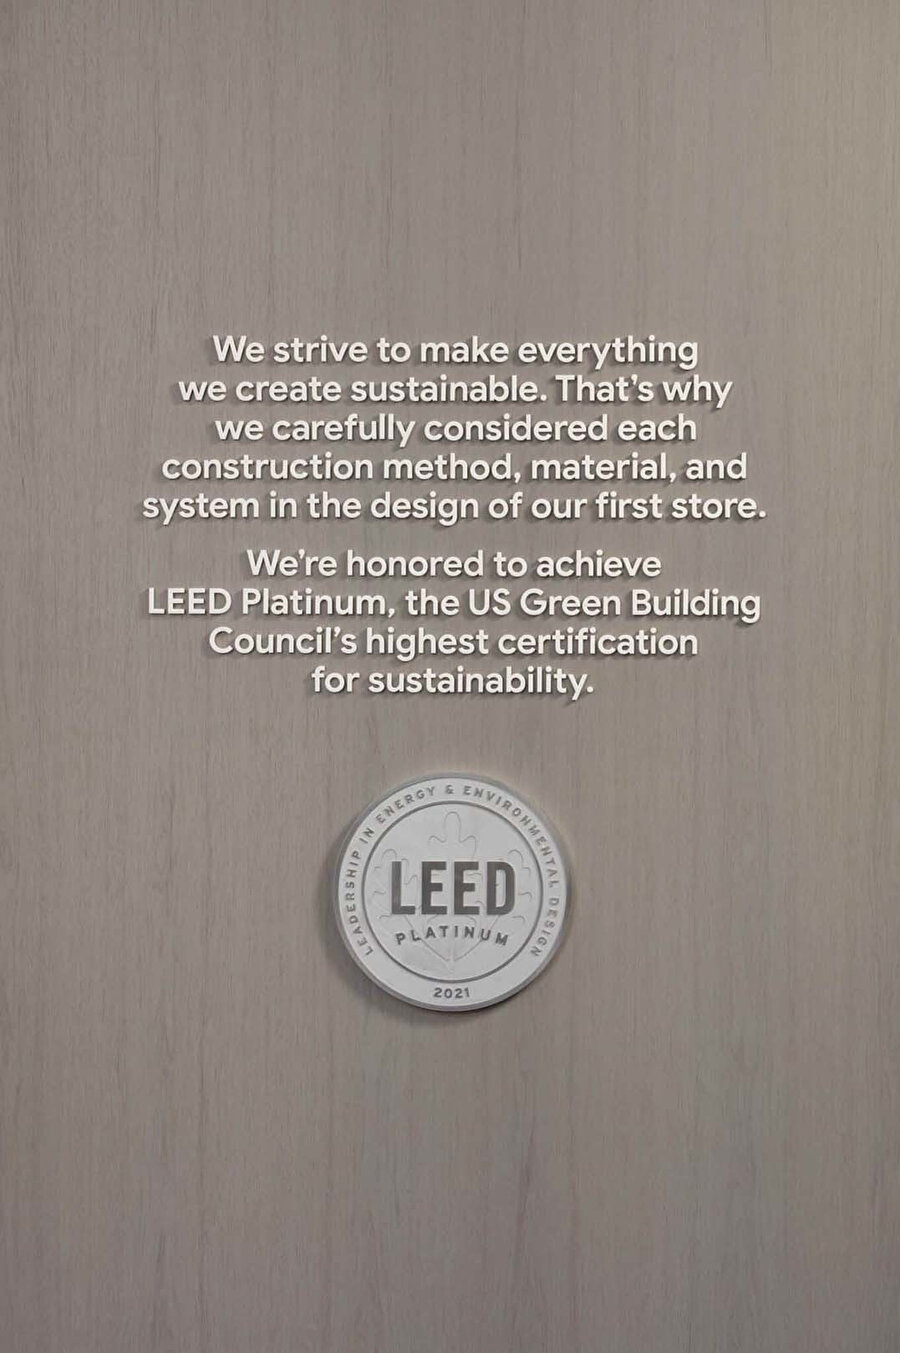 Reddymade Architecture and Design tarafından en yüksek sürdürülebilir ve yenilenebilir uygulama standartlarına göre tasarlanan mağaza LEED Platin sertifikasına sahip.